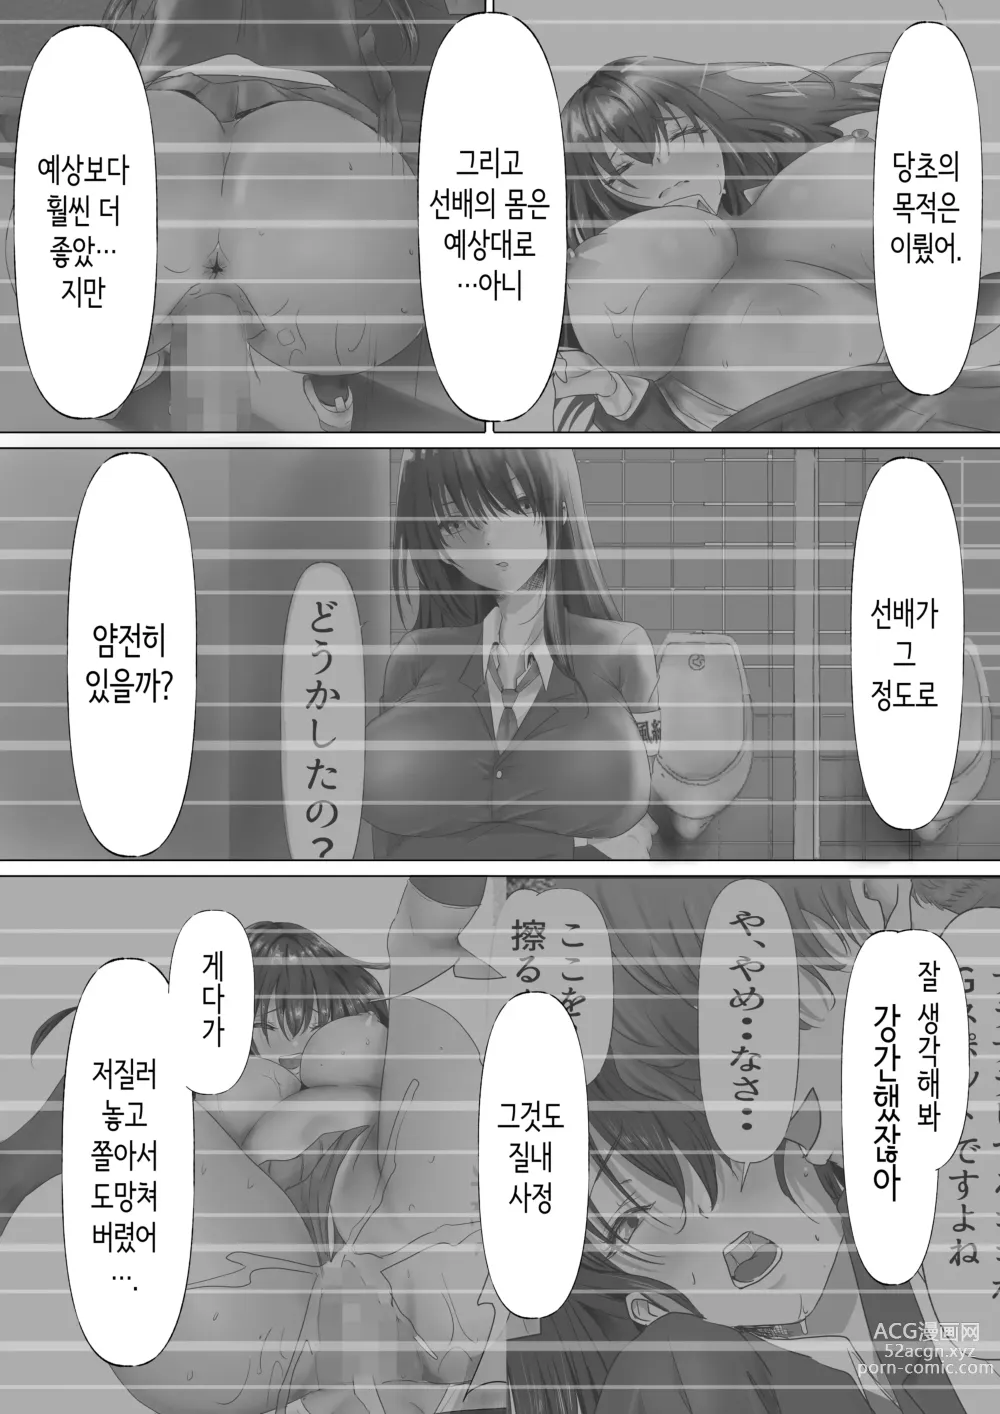 Page 45 of doujinshi 과묵하고 긴 흑발의 거유 풍기위원장을 미친듯이 따먹고 싶다